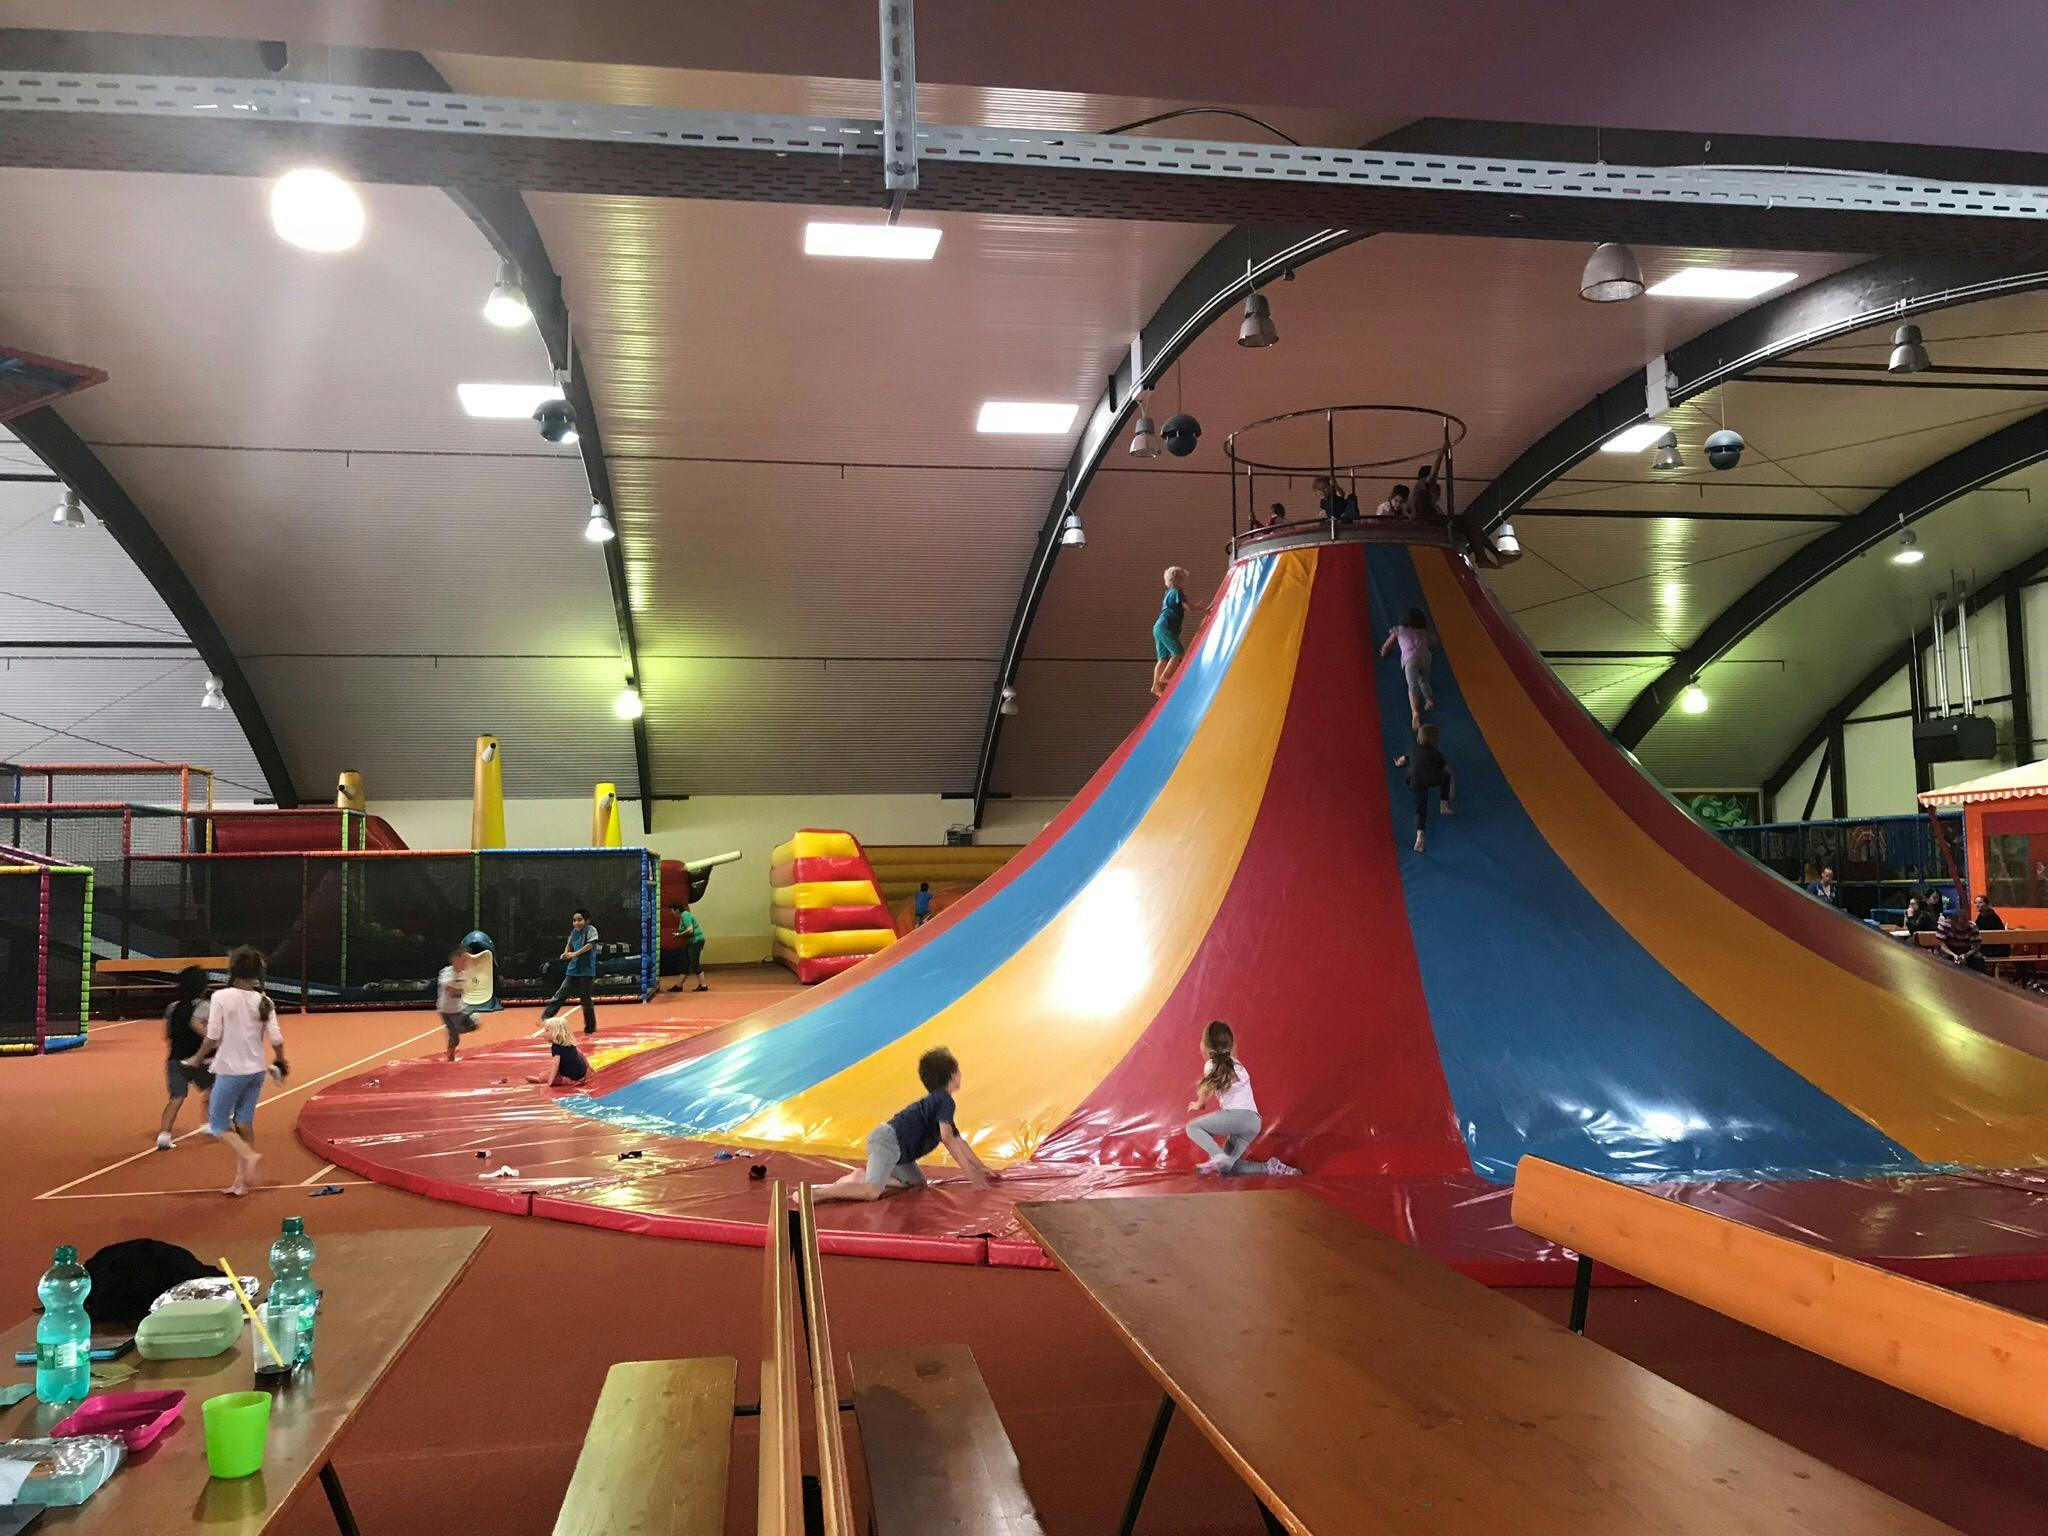 Trampoline Indoorspielplatz Trier - Ausflugstipp für Kinder in Trier